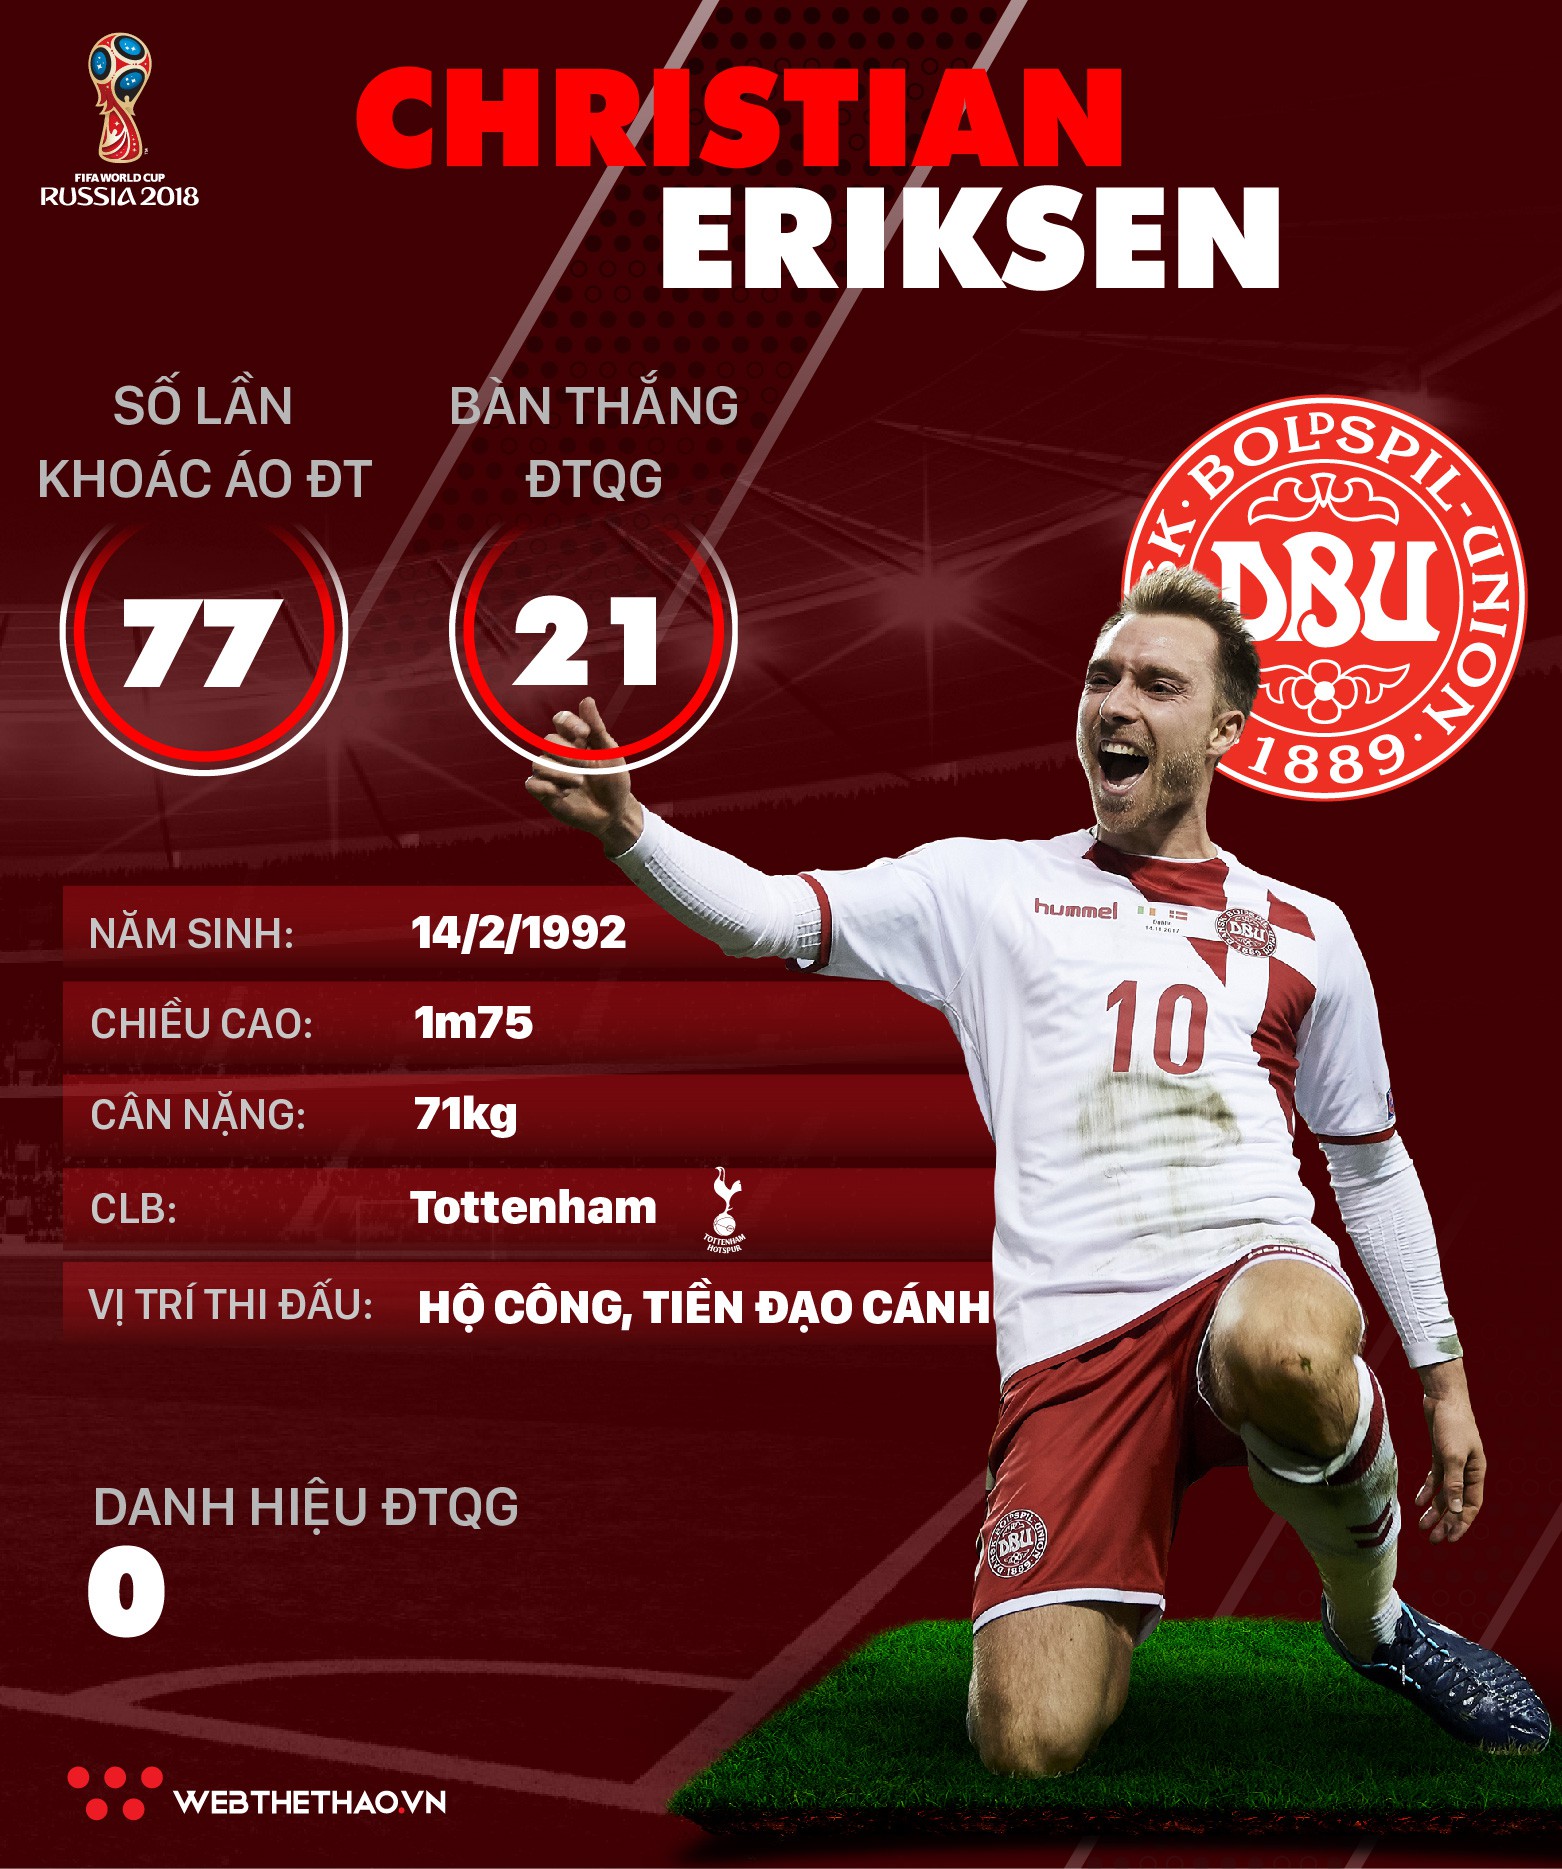 Thông tin cầu thủ Christian Eriksen của ĐT Đan Mạch dự World Cup 2018 - Ảnh 1.